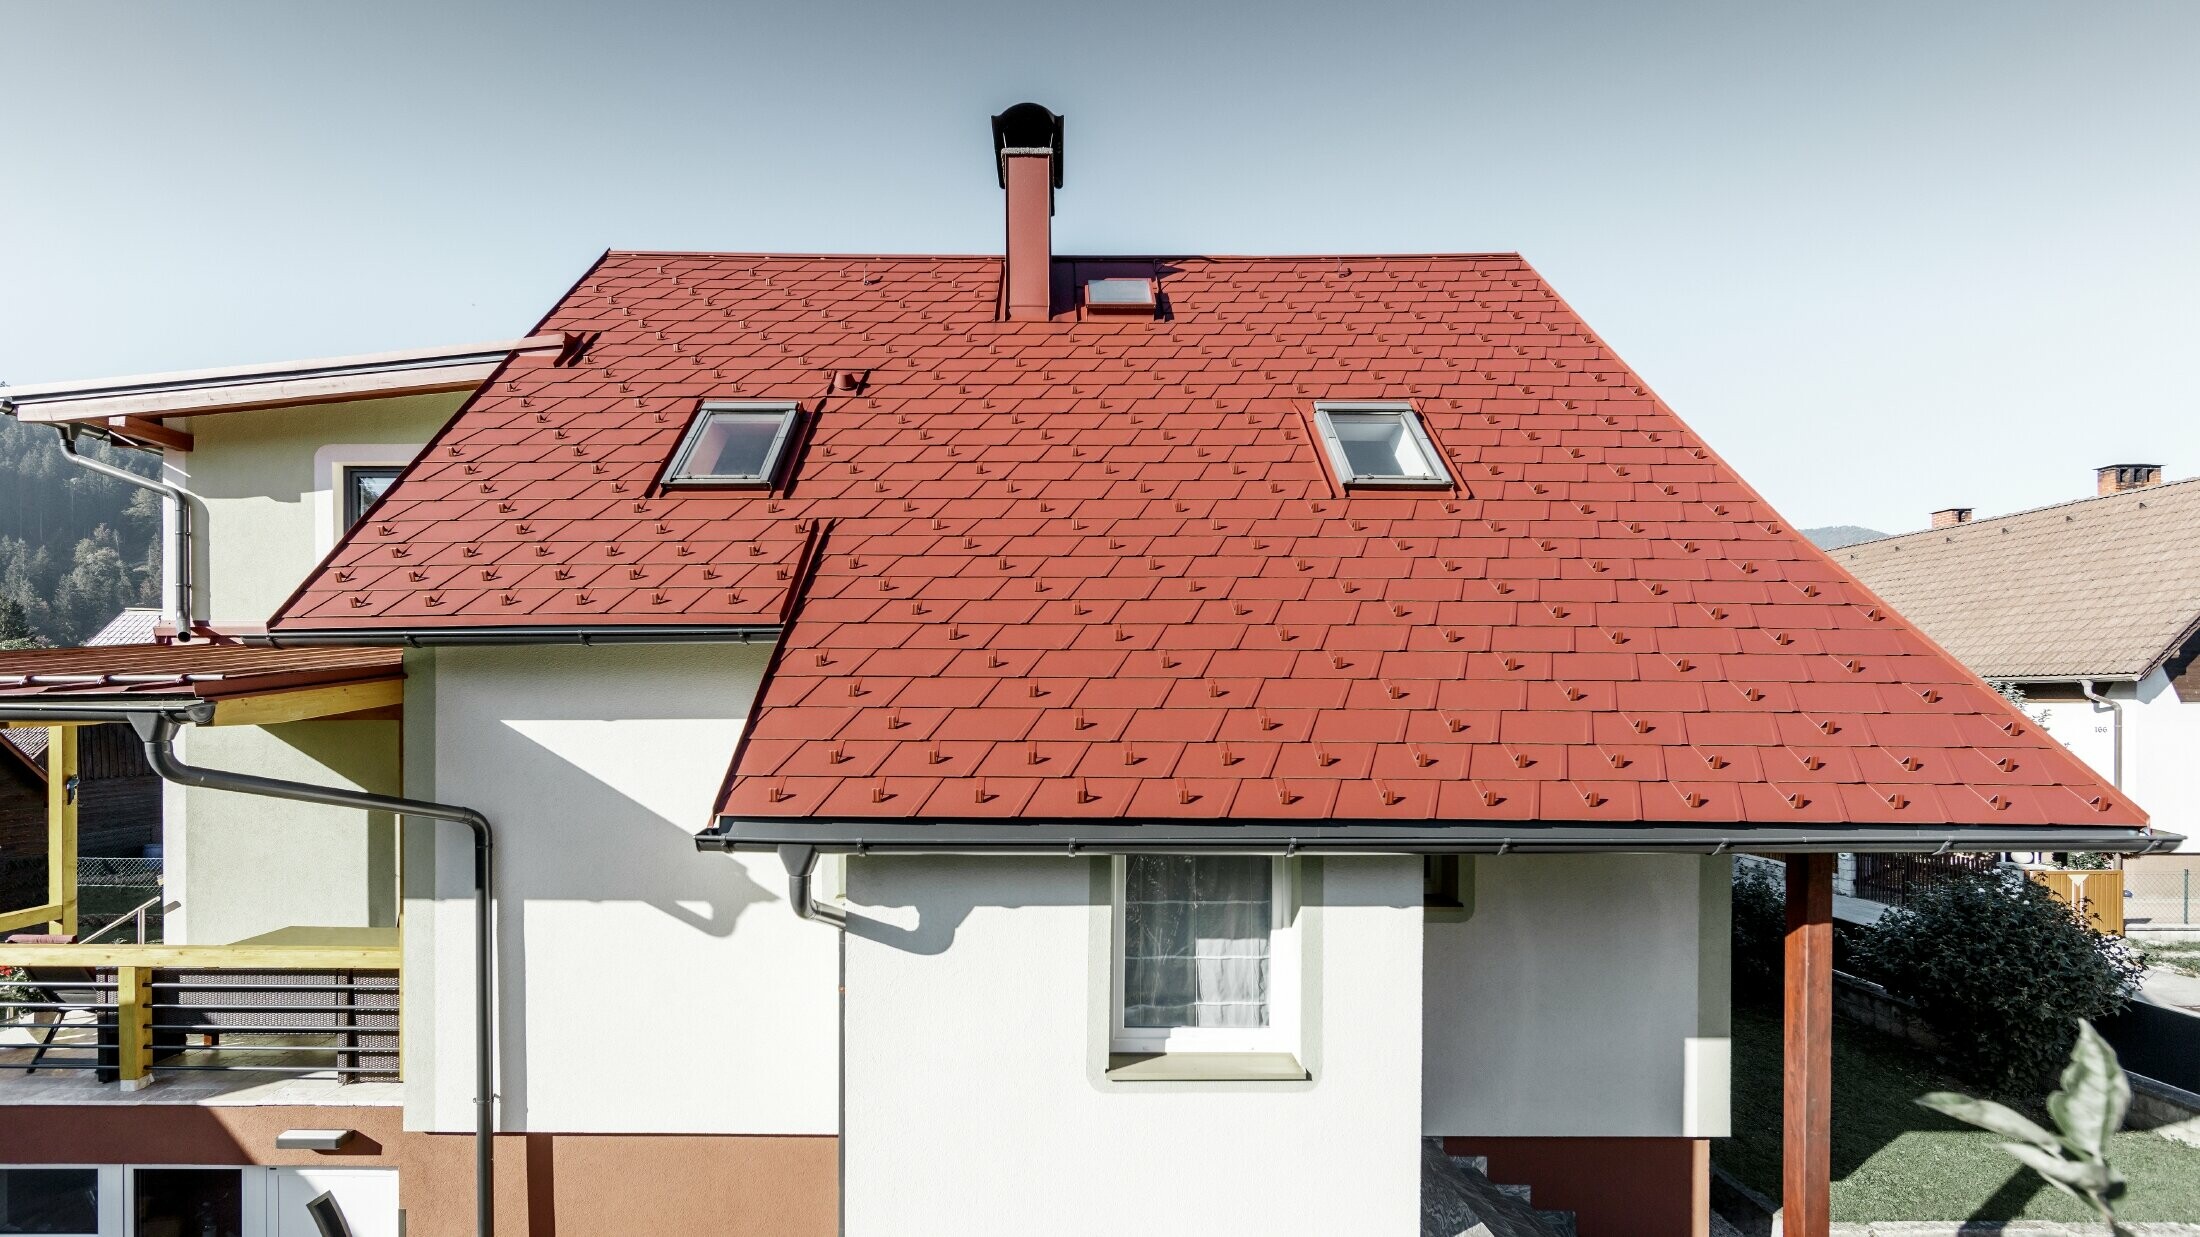 Saniertes Einfamilienhaus mit neuem PREFA Dachschindel-Dach, verlegt wurde die DS.19 in der Farbe oxydrot.